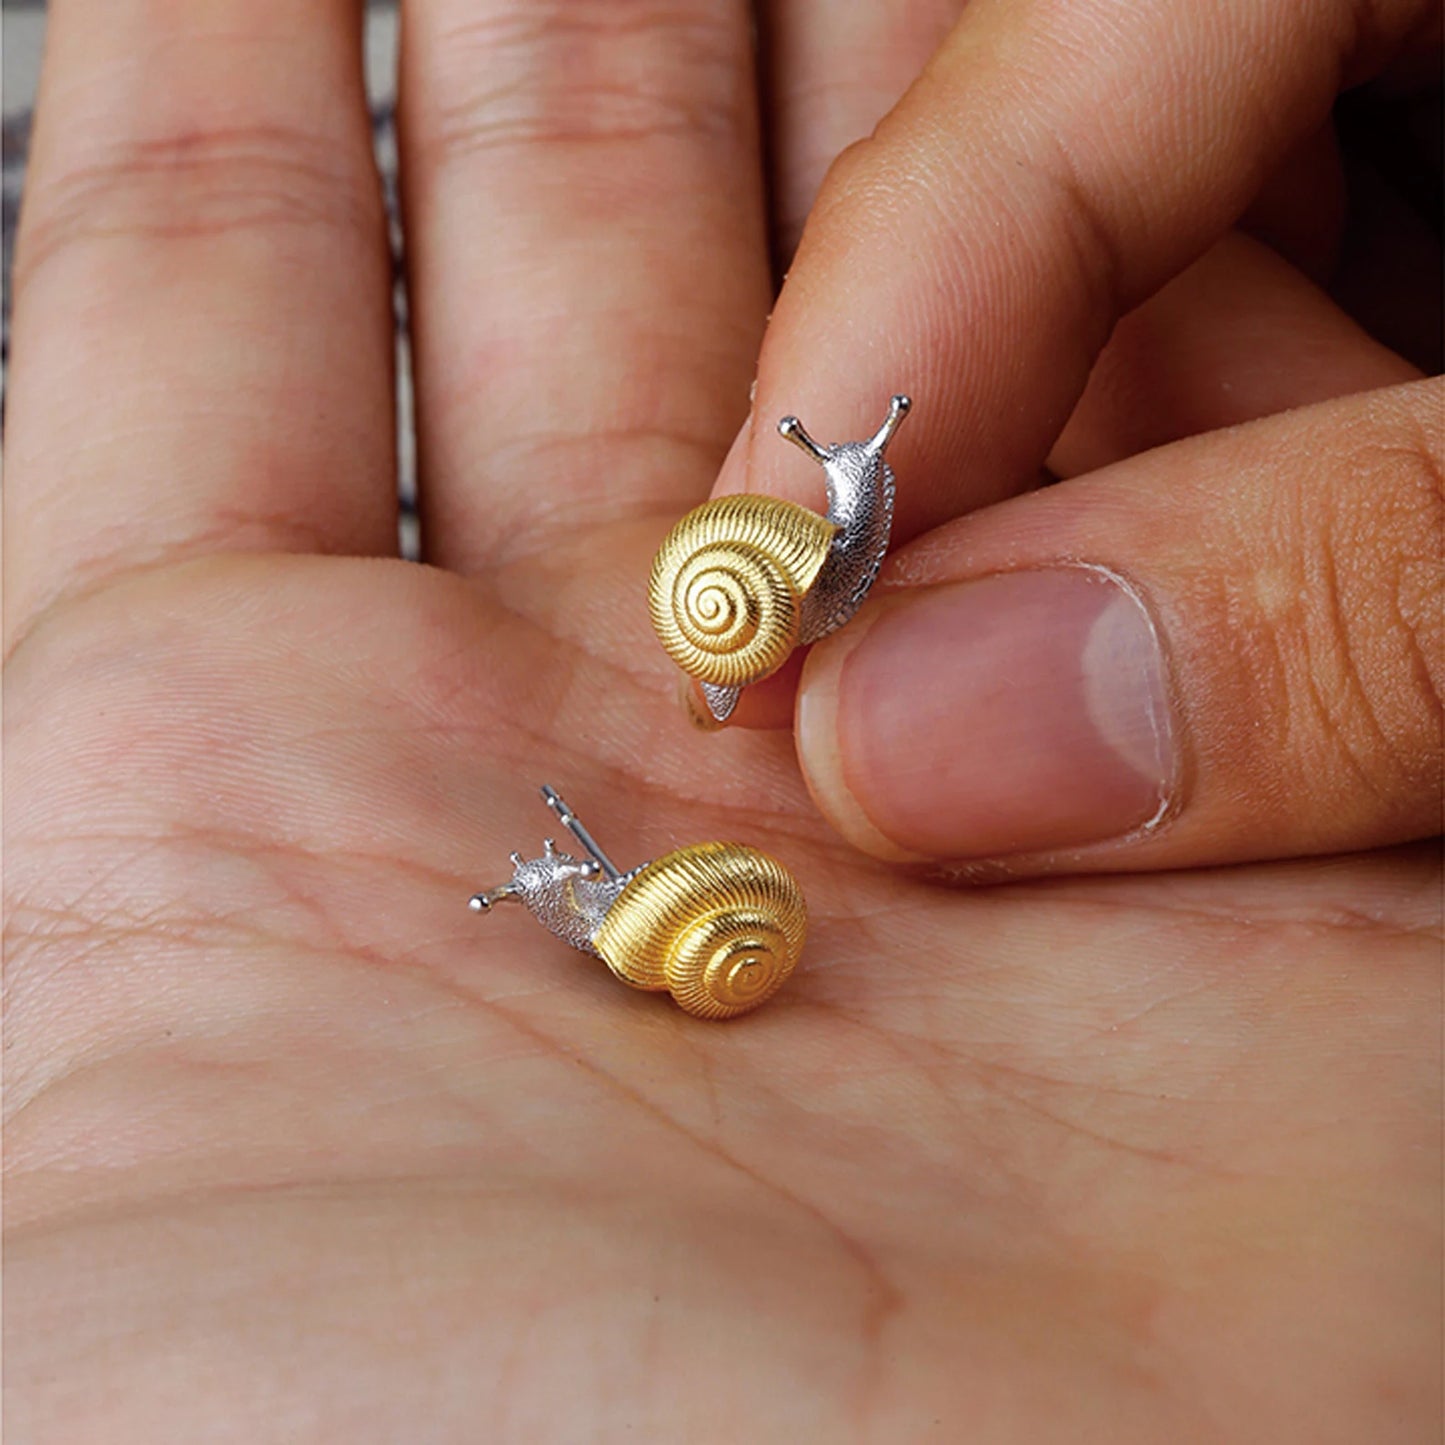 Silver Snail Stud Earrings 18K Gold Plated